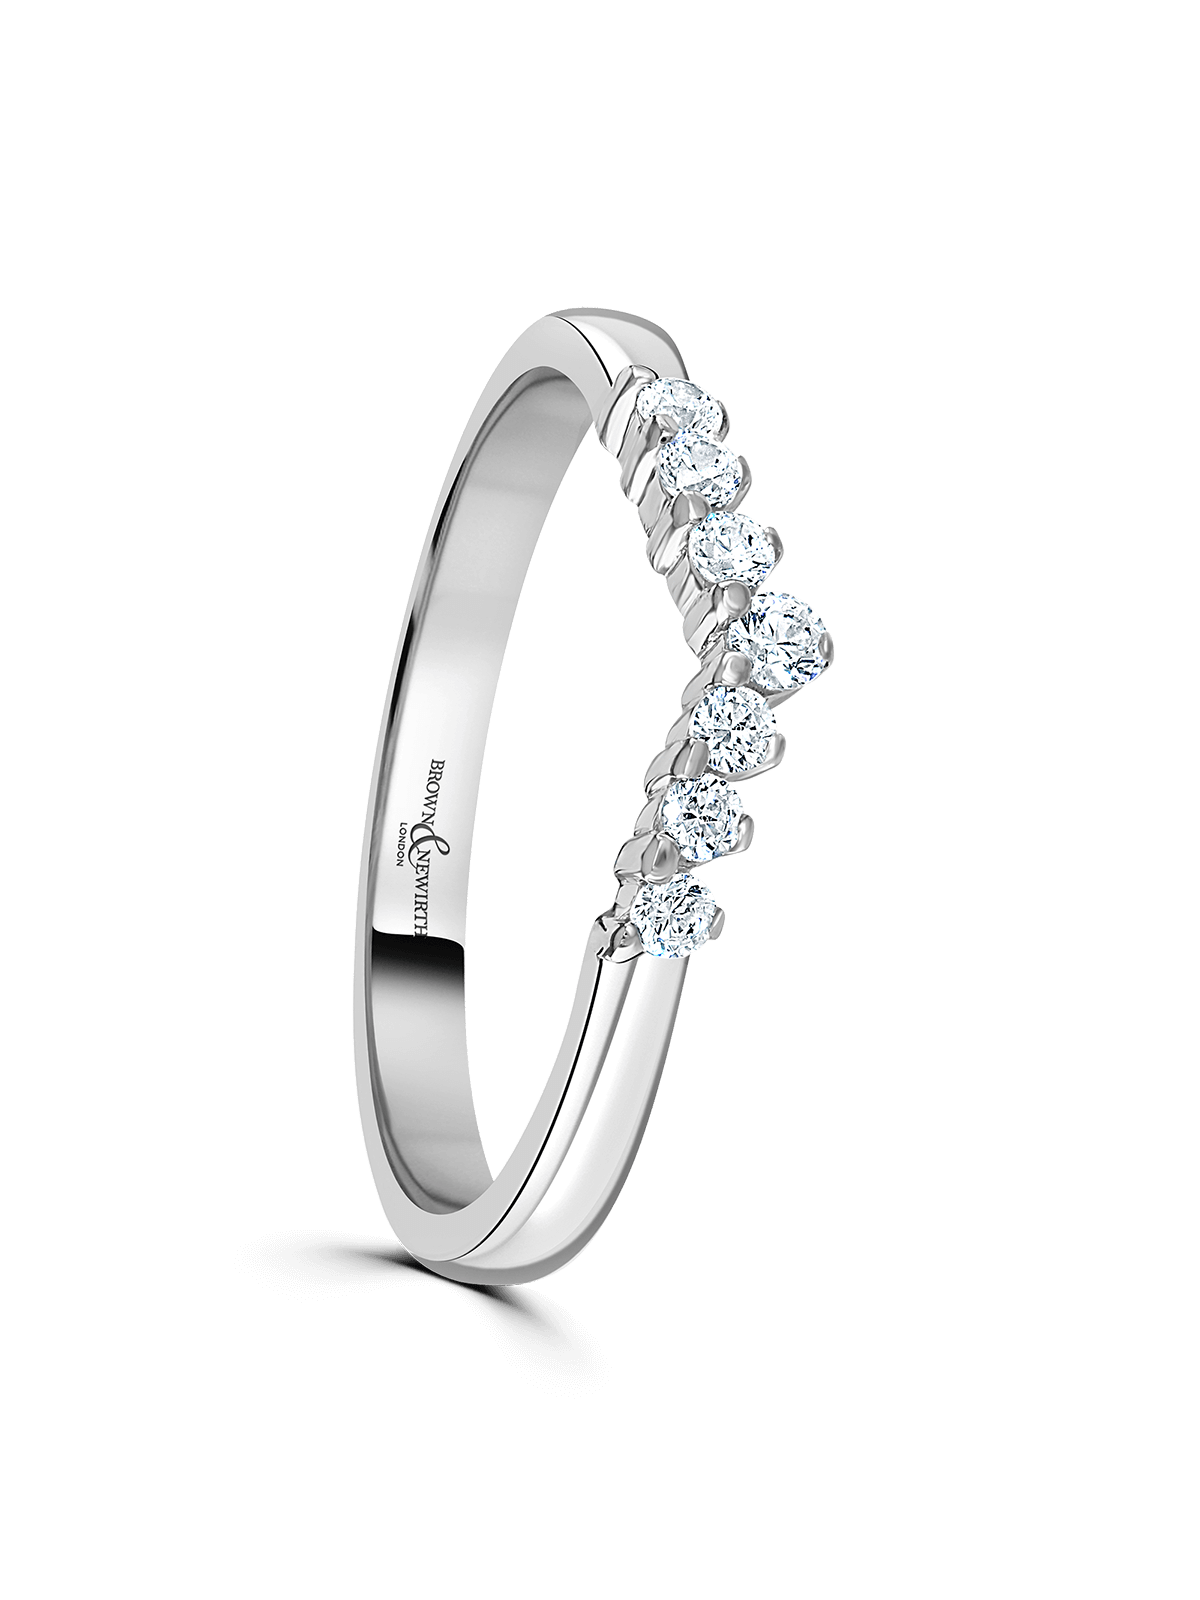 Brown & Newirth Royal 0.15ct Brilliant Cut Diamond Tiara Ring in Platinum